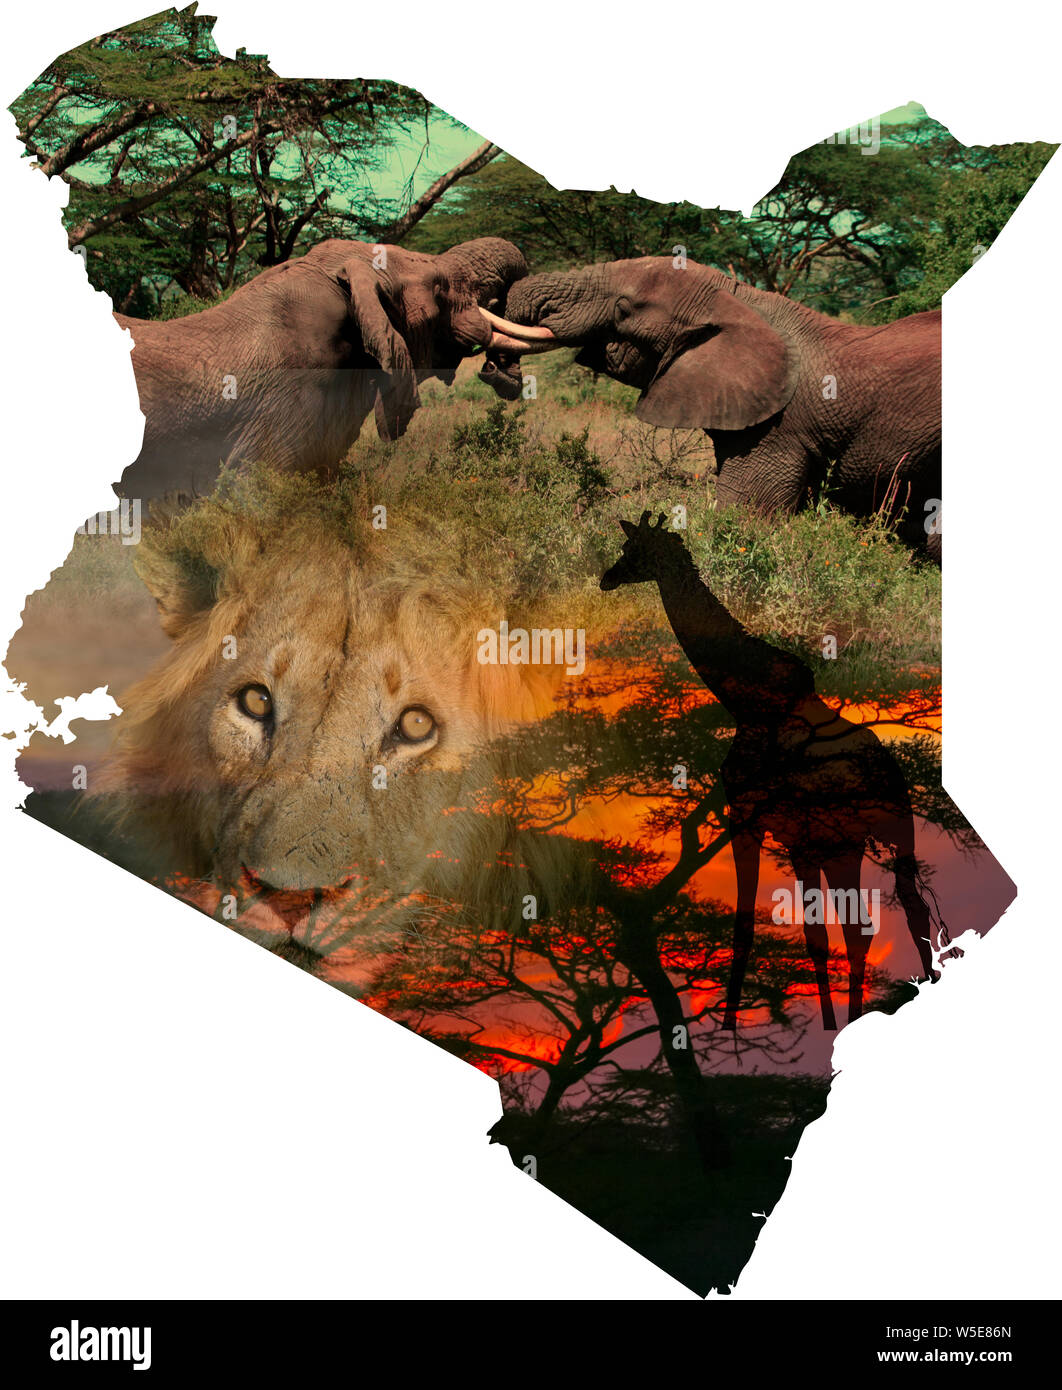 Amélioration de l'image numérique d'une carte du Kenya collage avec des images de la faune locale et les paysages Banque D'Images